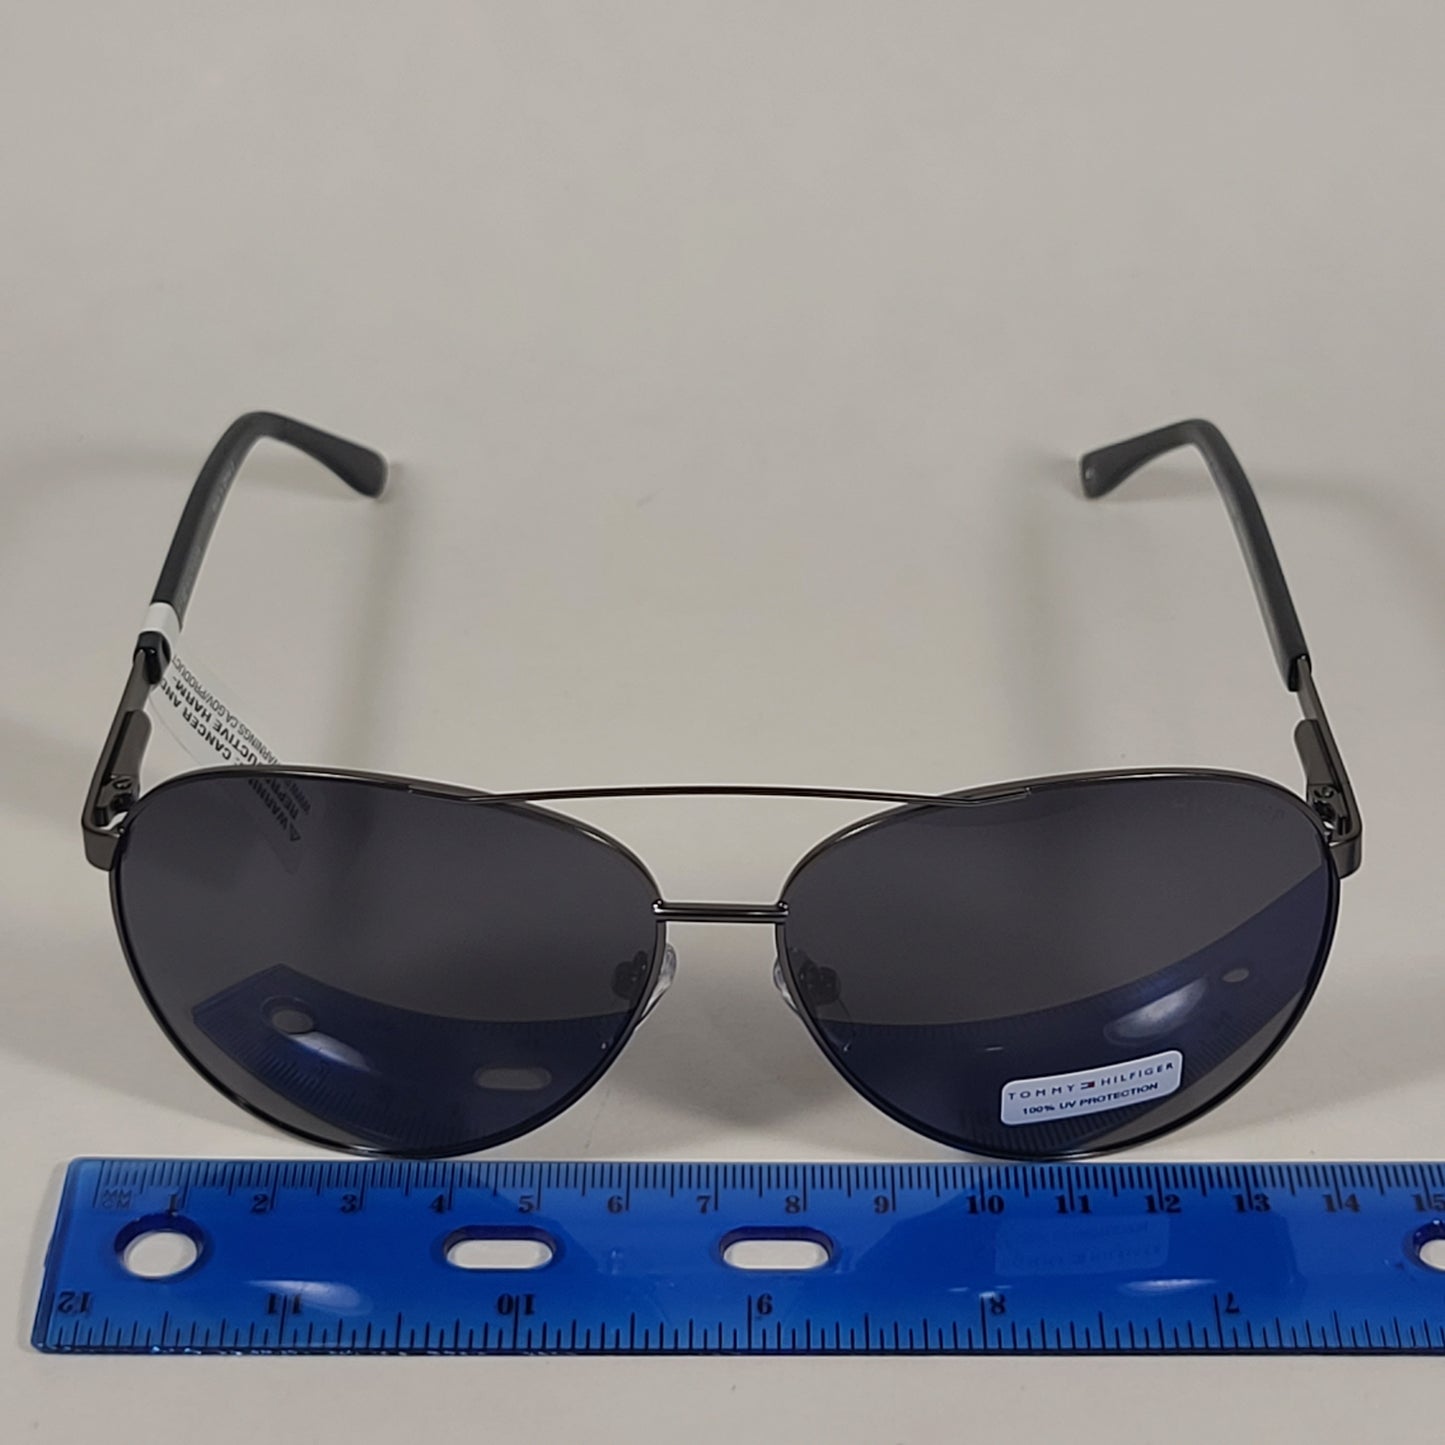 Tommy Hilfiger Lucas Aviator Pilot Sunglasses Gunmetal Black Frame Gray Tinted Lens LUCAS MM OU565P - Sunglasses